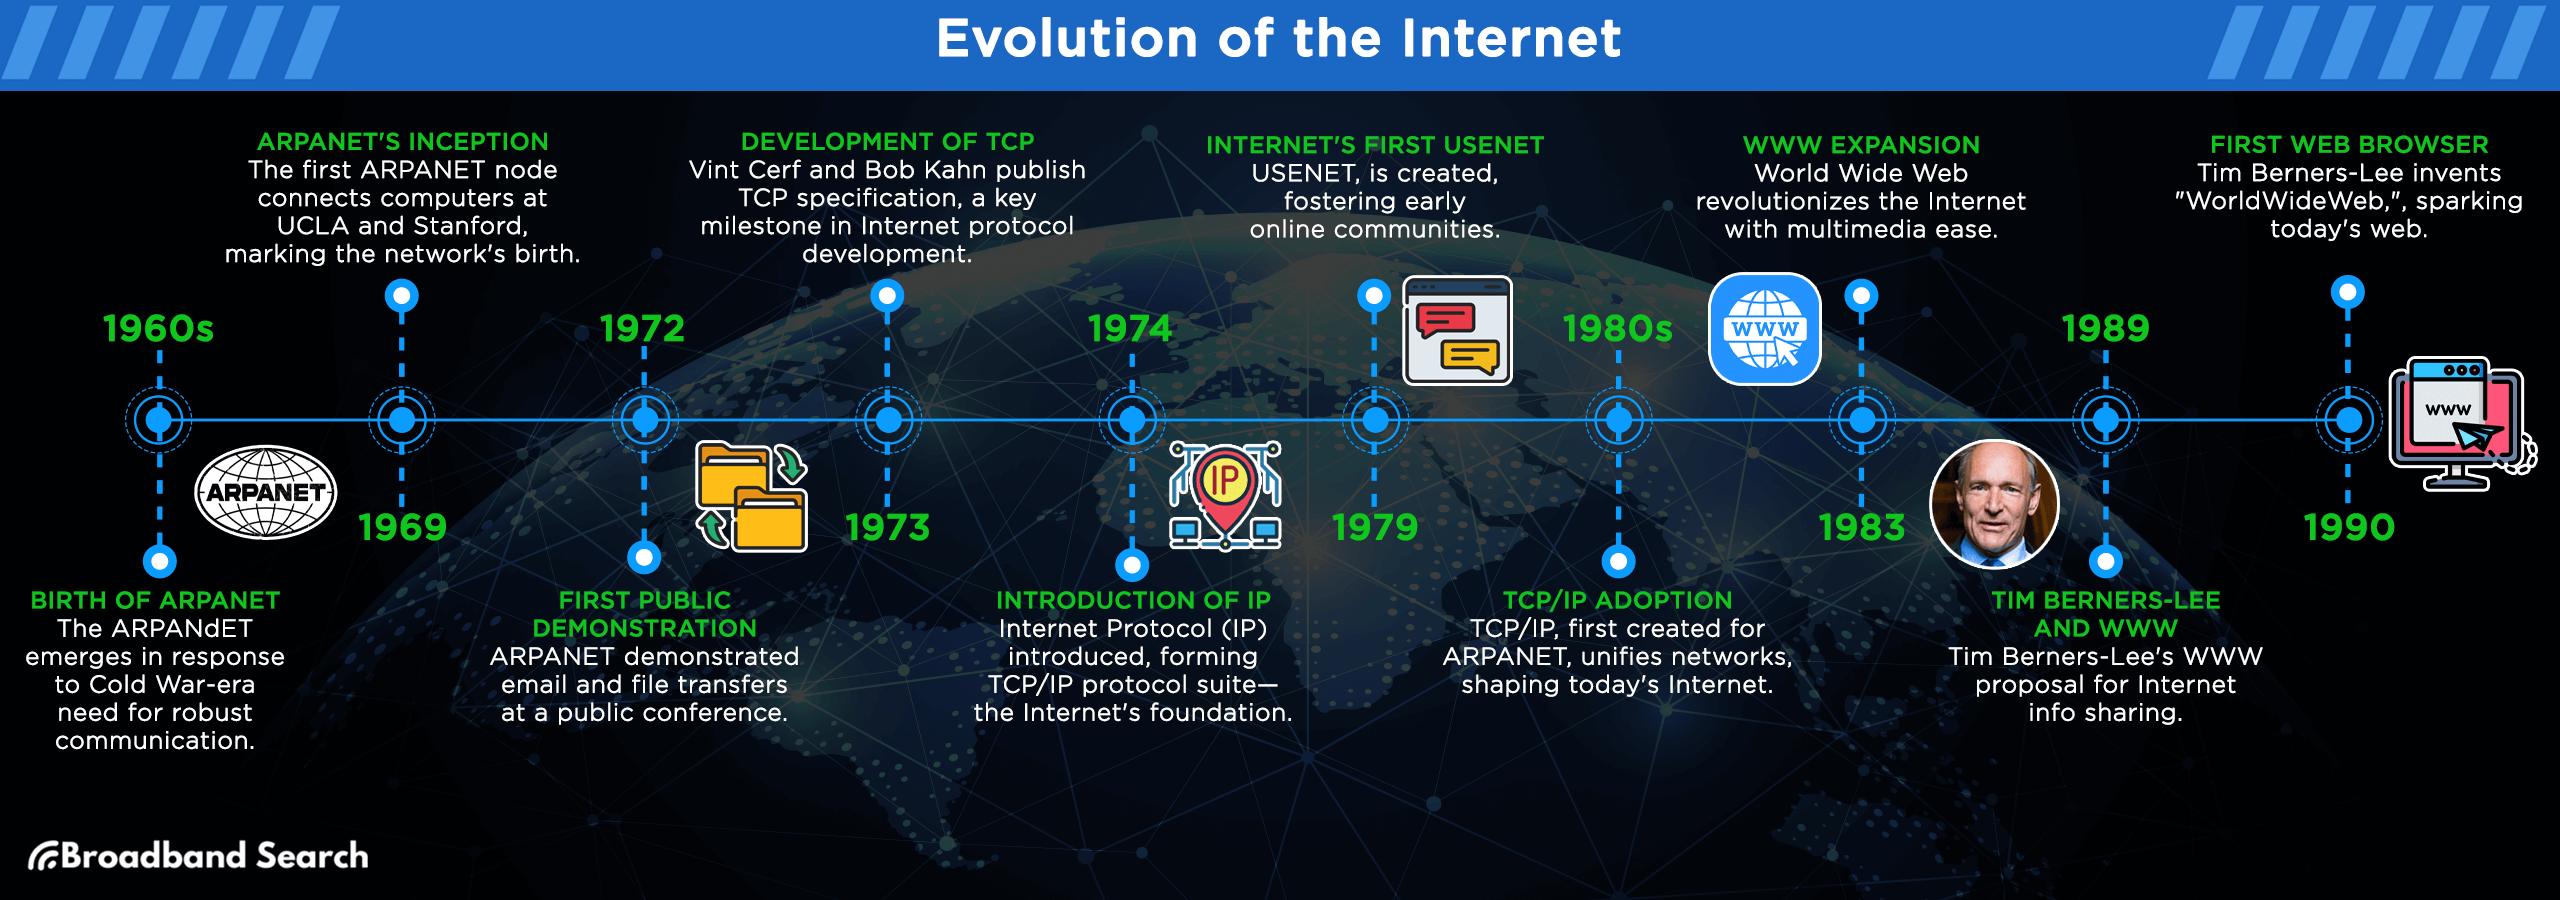 Evolution timeline of the internet